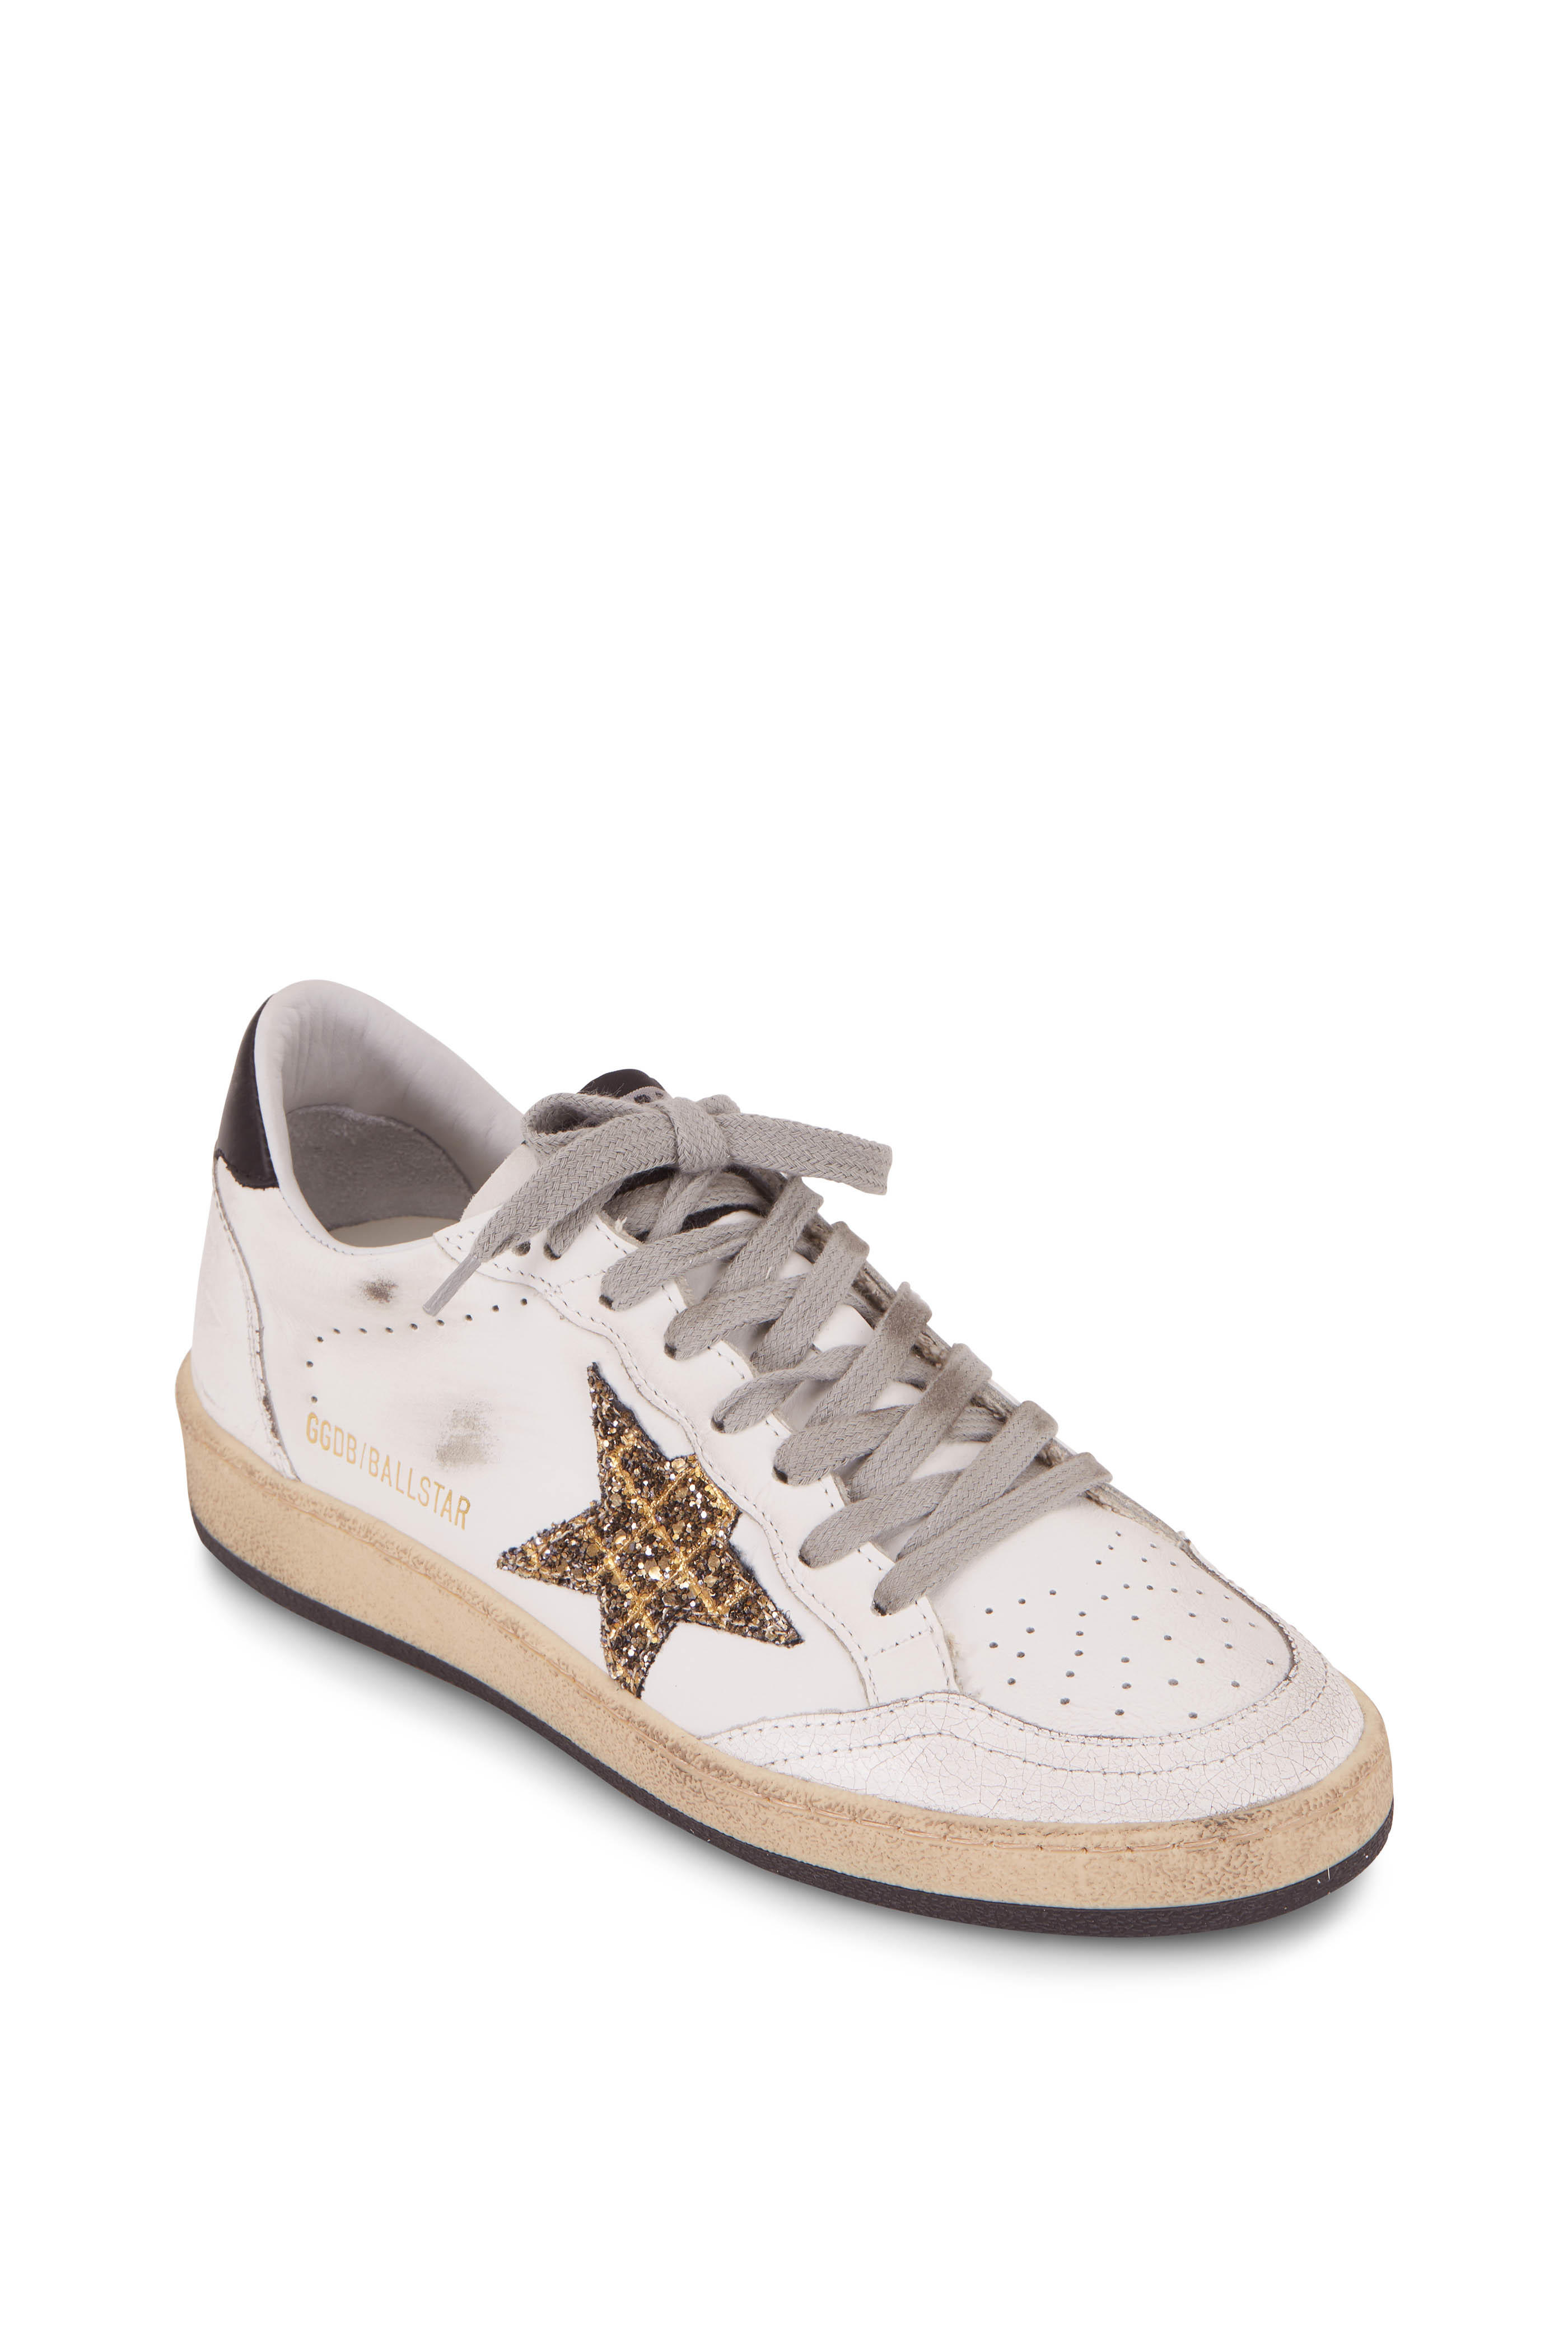 golden goose glitter star sneakers